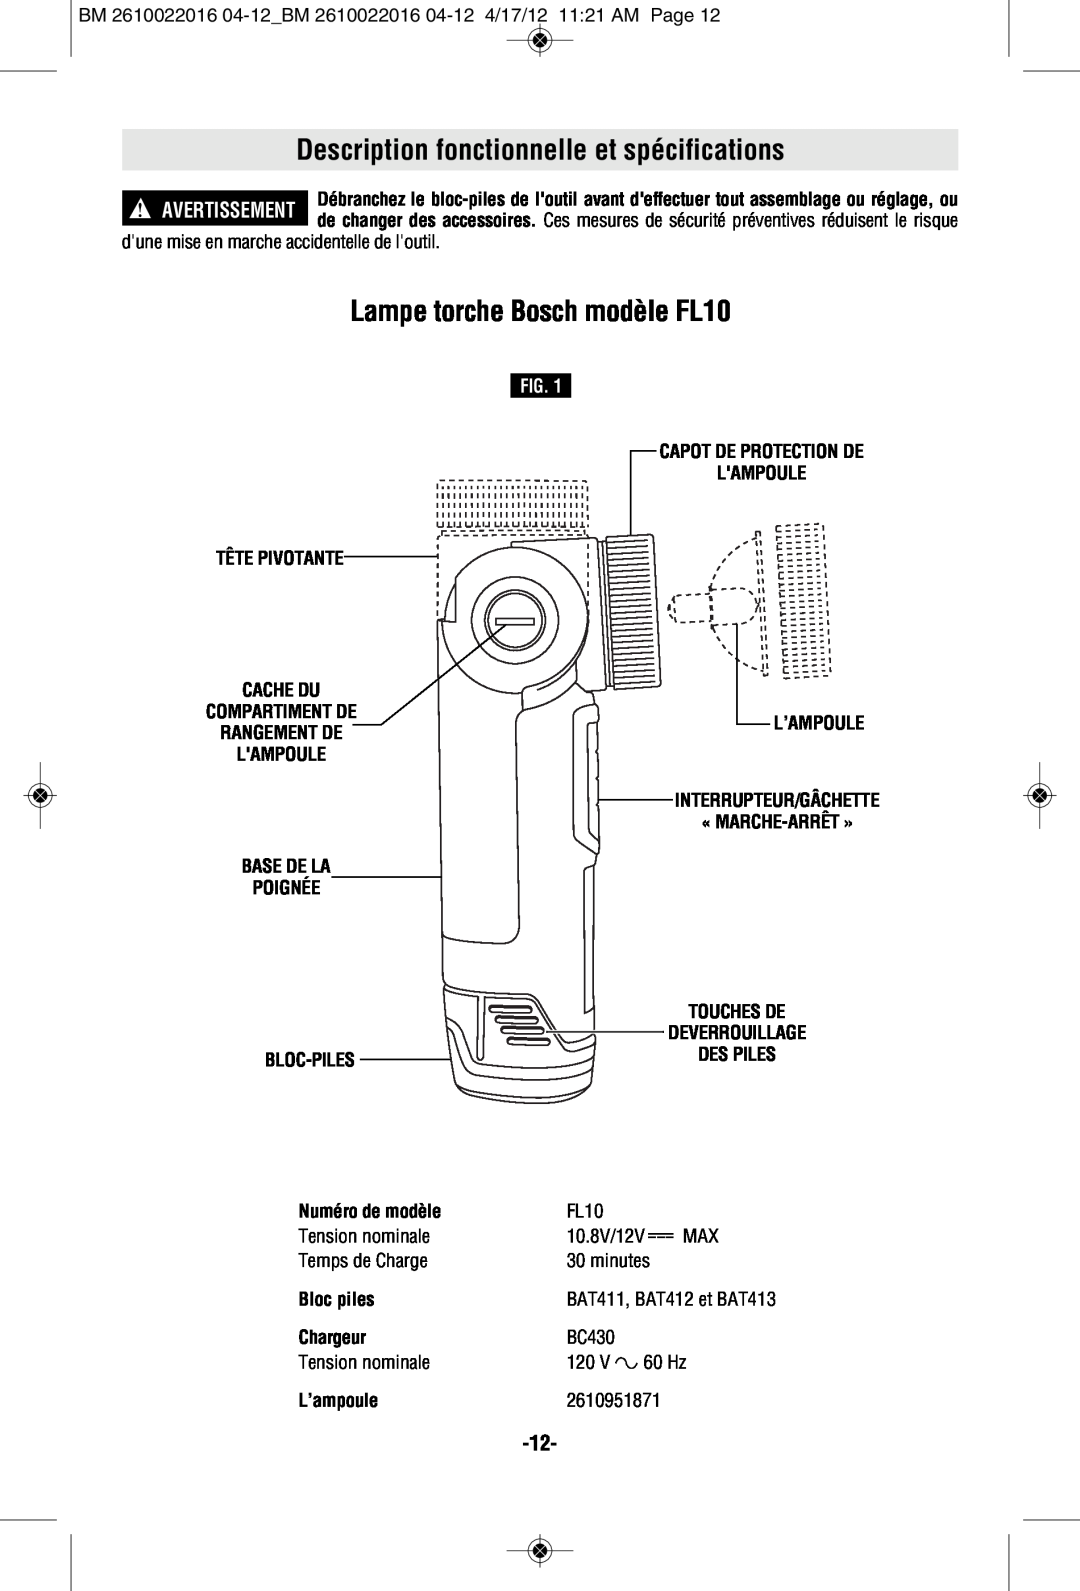 Bosch Power Tools CLPK33-120LP manual Description fonctionnelle et spécifications, Lampe torche Bosch modèle FL10, Fig 